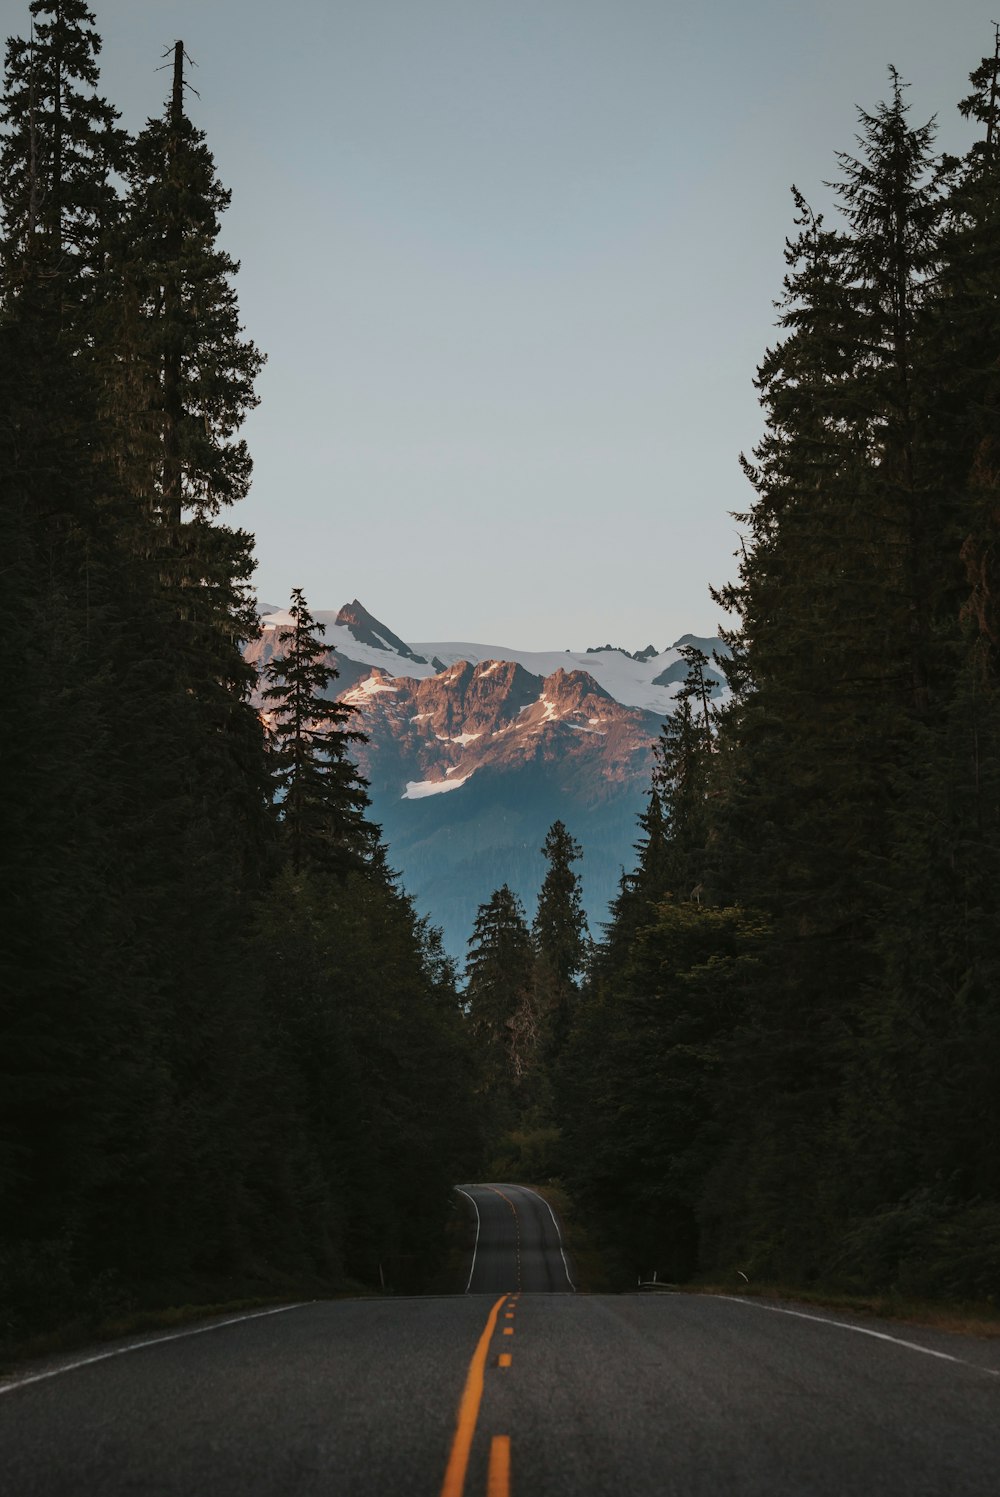 山、木、道路の風景写真